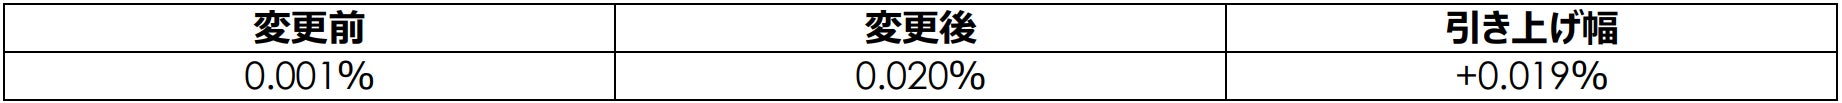 4/1～円普通預金金利および円定期預金金利を改定